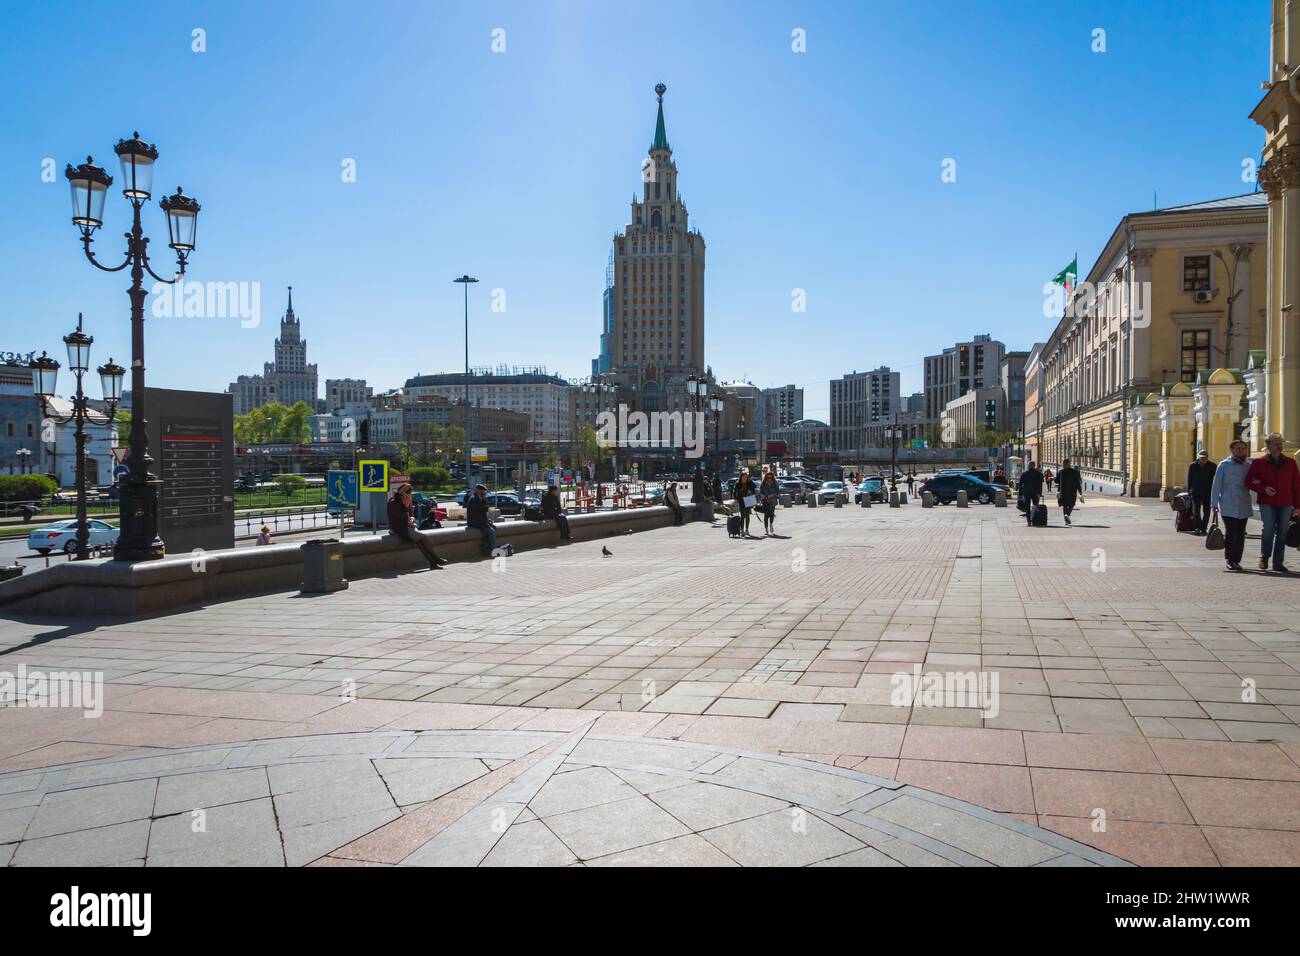 Mosca, Russia - Maggio 2019: Il paesaggio urbano di Mosca con uno dei famosi sette suore edificio sullo sfondo. Vista del centro di Mosca in Russia. Foto Stock